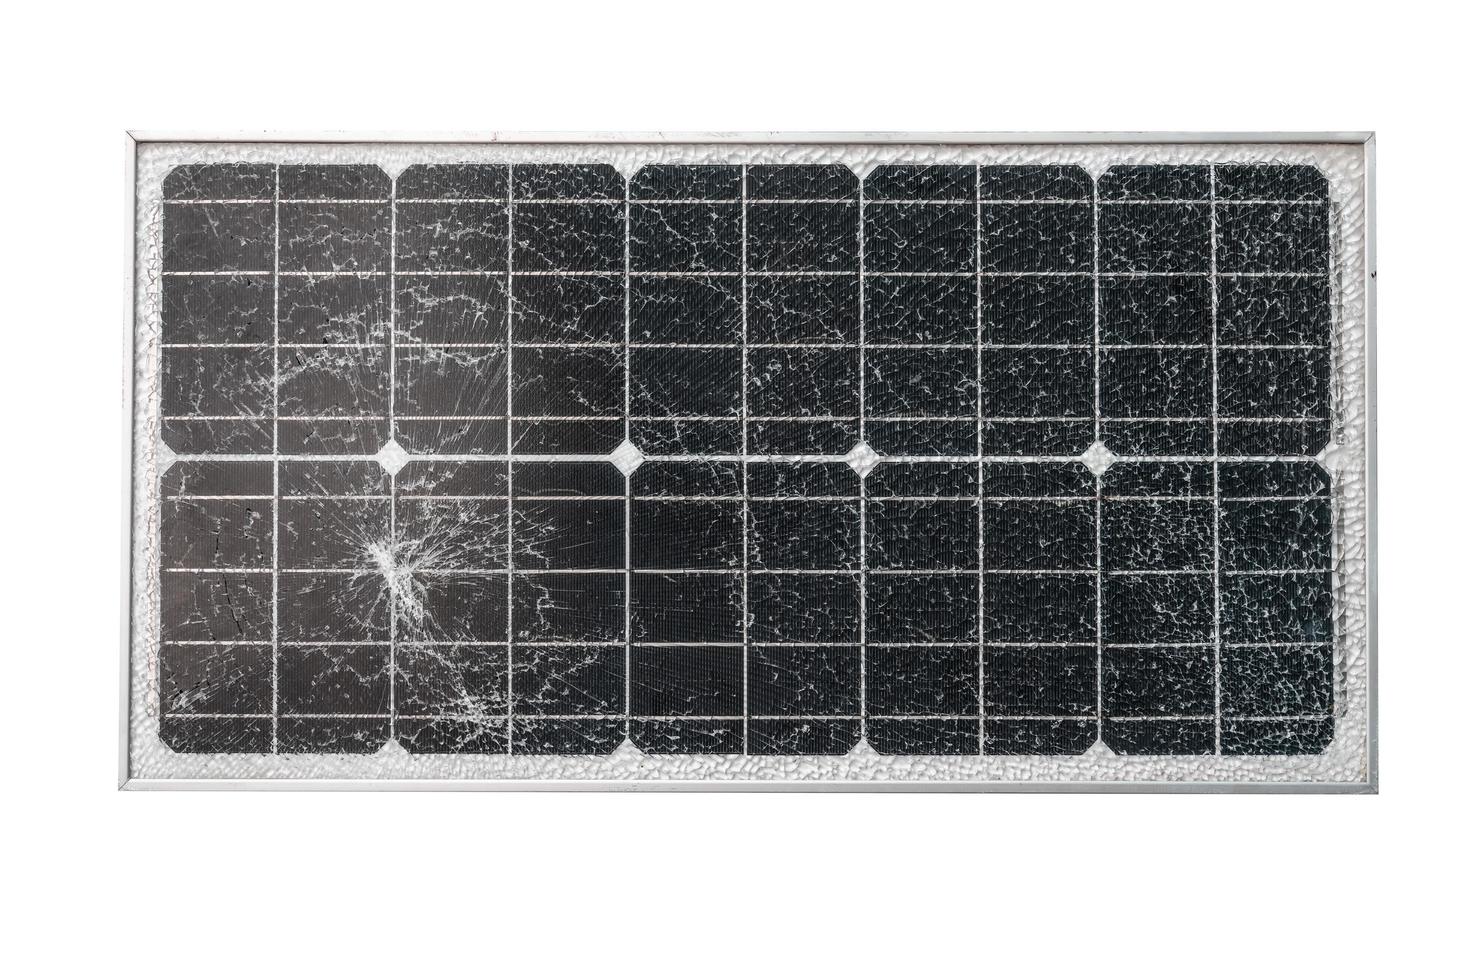 painéis solares quebrados, danos no vidro da célula solar. foto